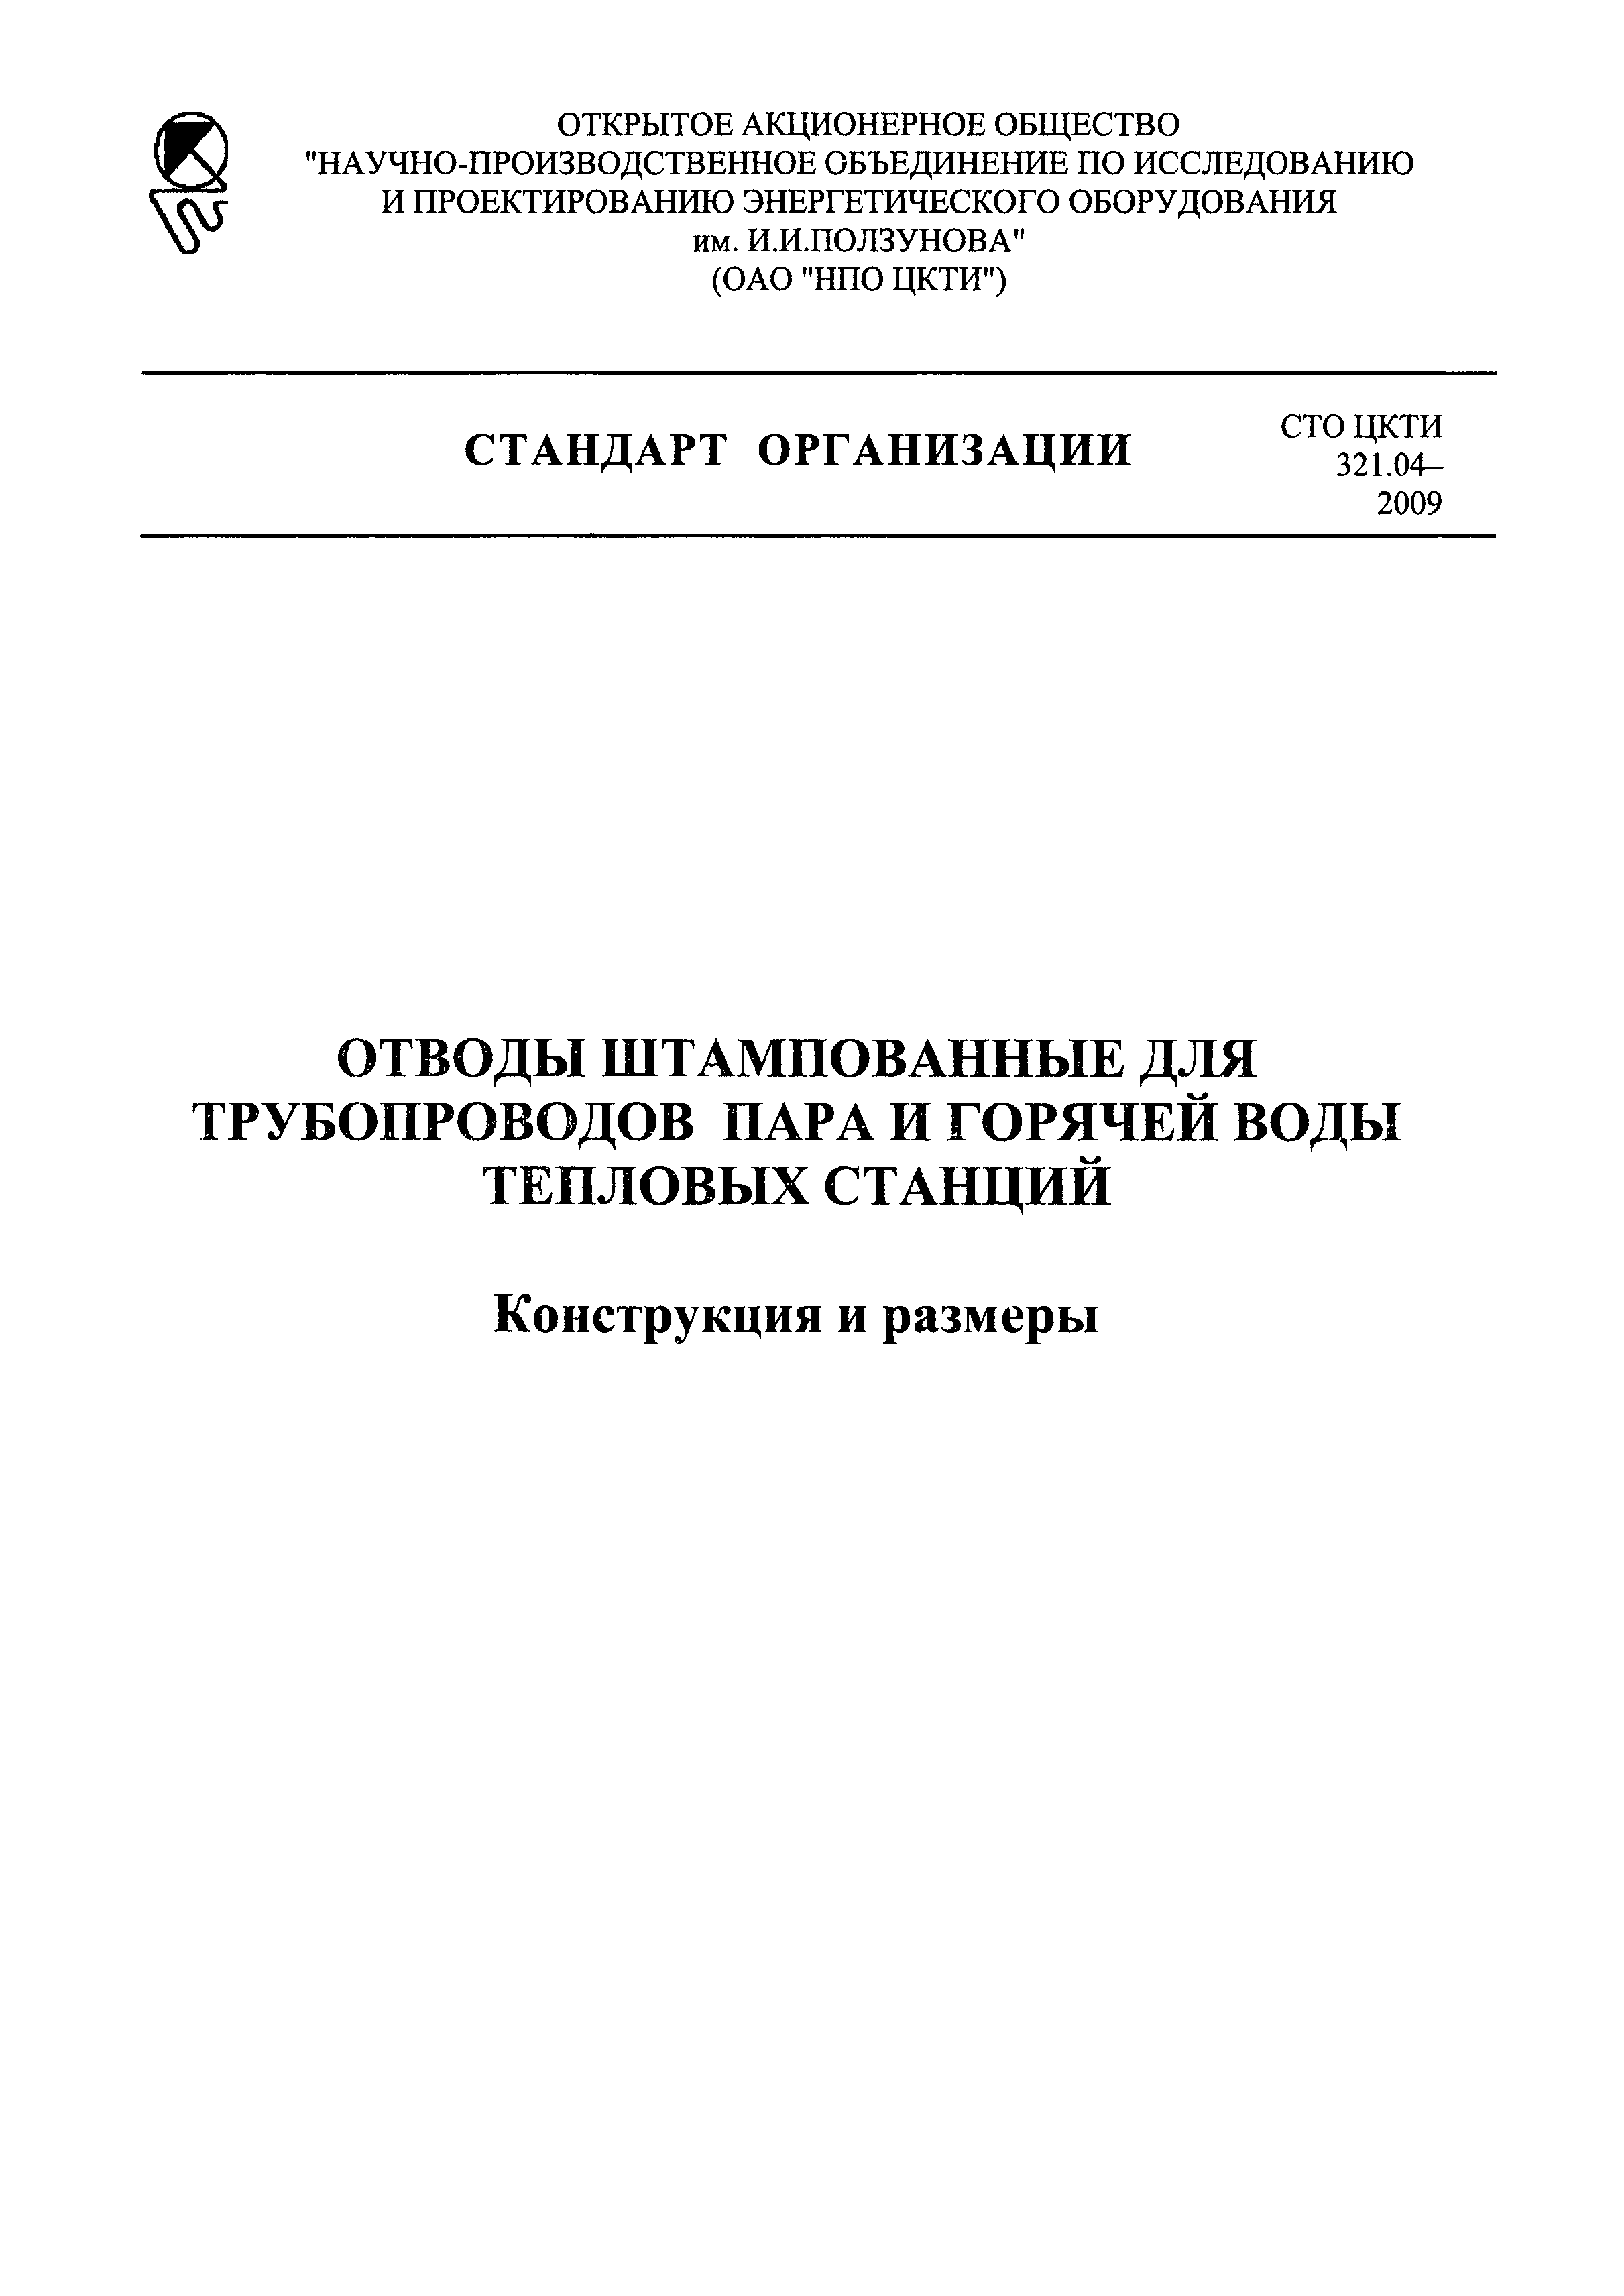 СТО ЦКТИ 321.04-2009